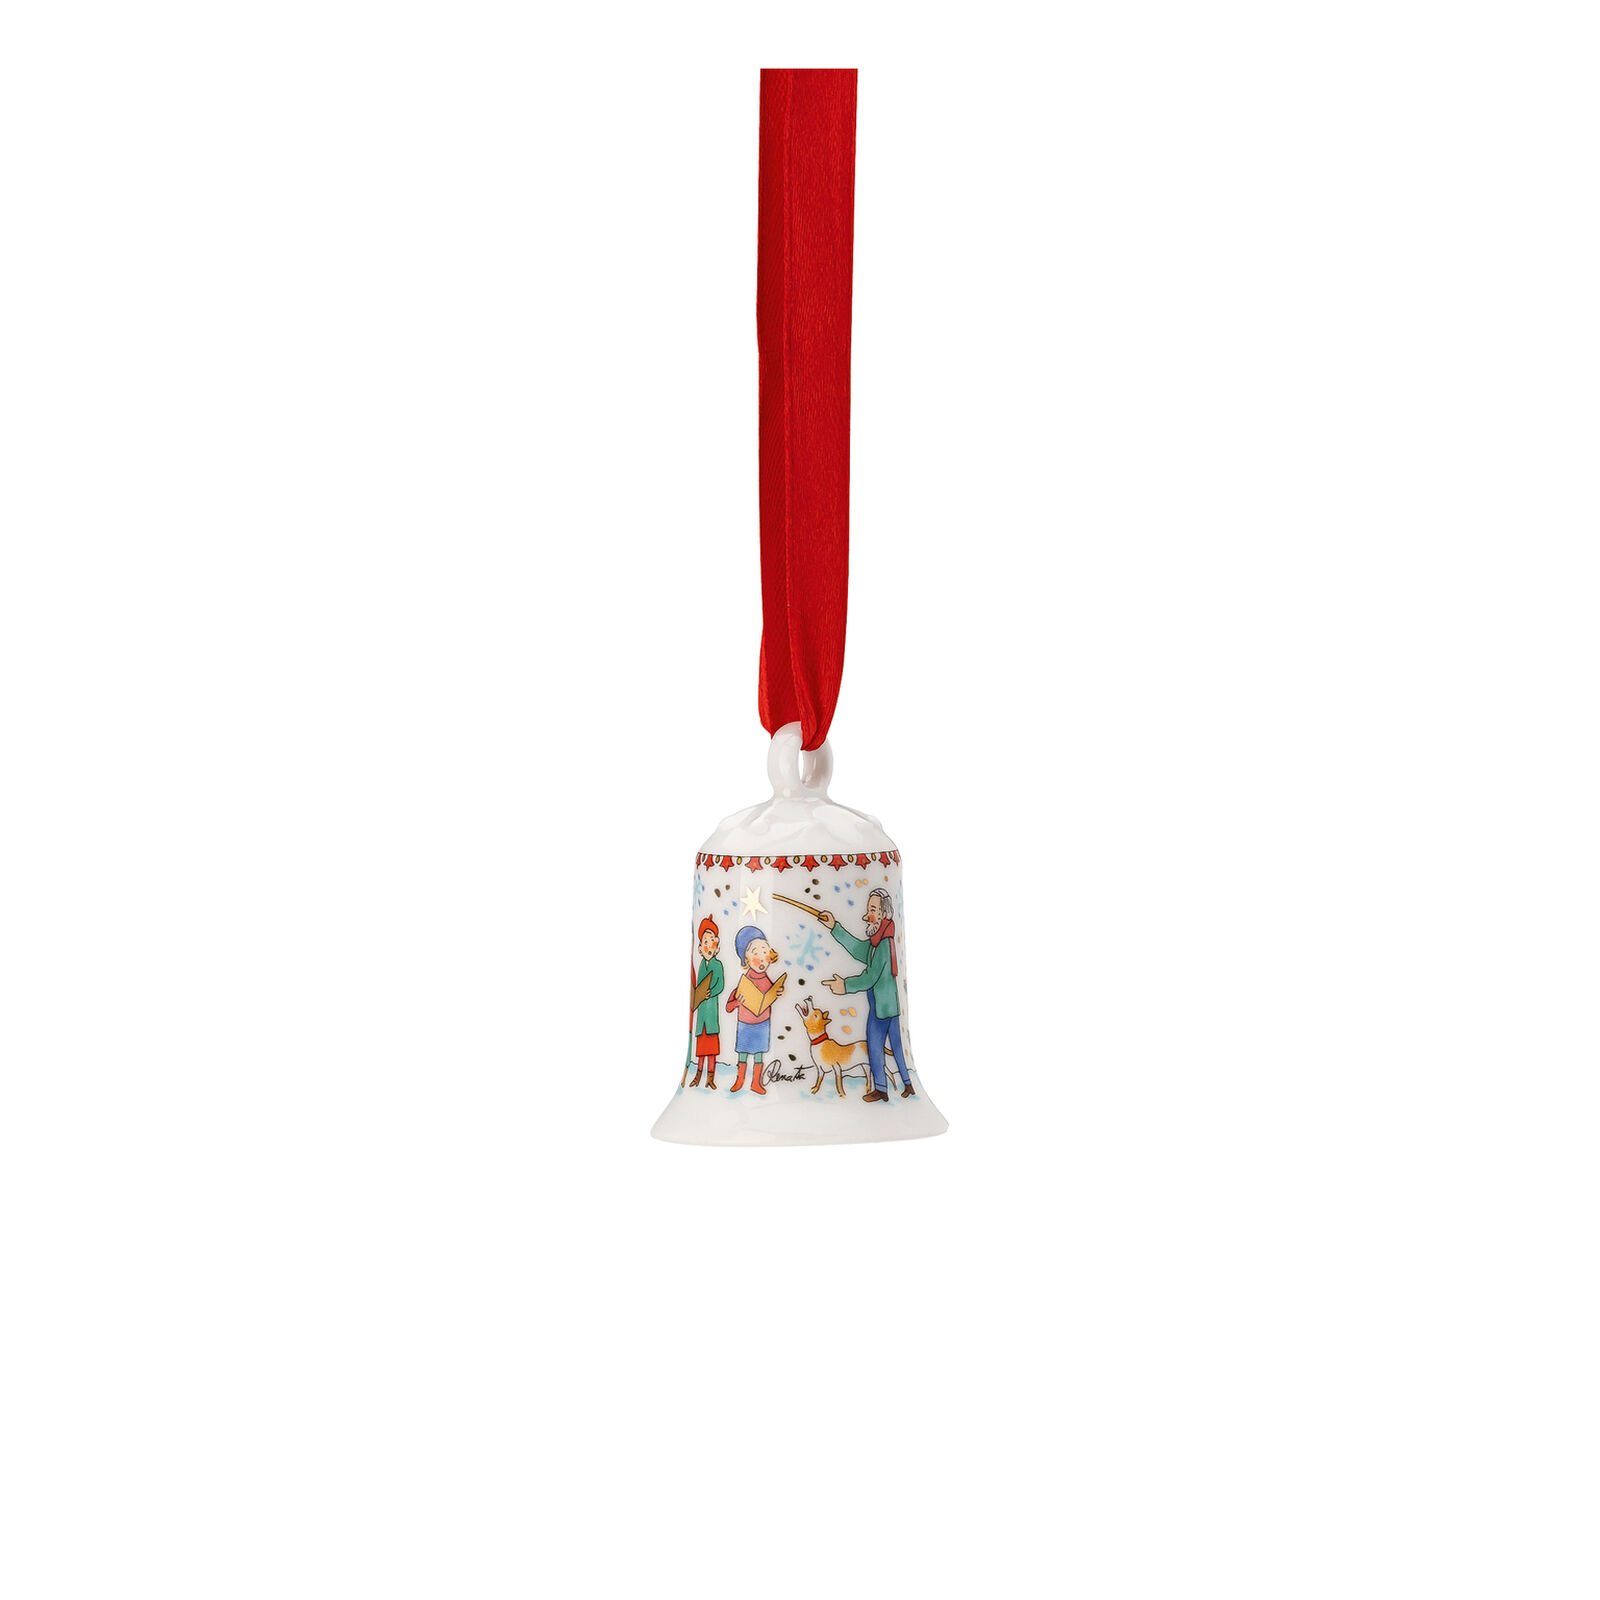 mit liebevollen 23 Kinderchor Mini-Glocke Weihnachtsklänge Sammelkollektion St), Hutschenreuther (1 Hängedekoration Details